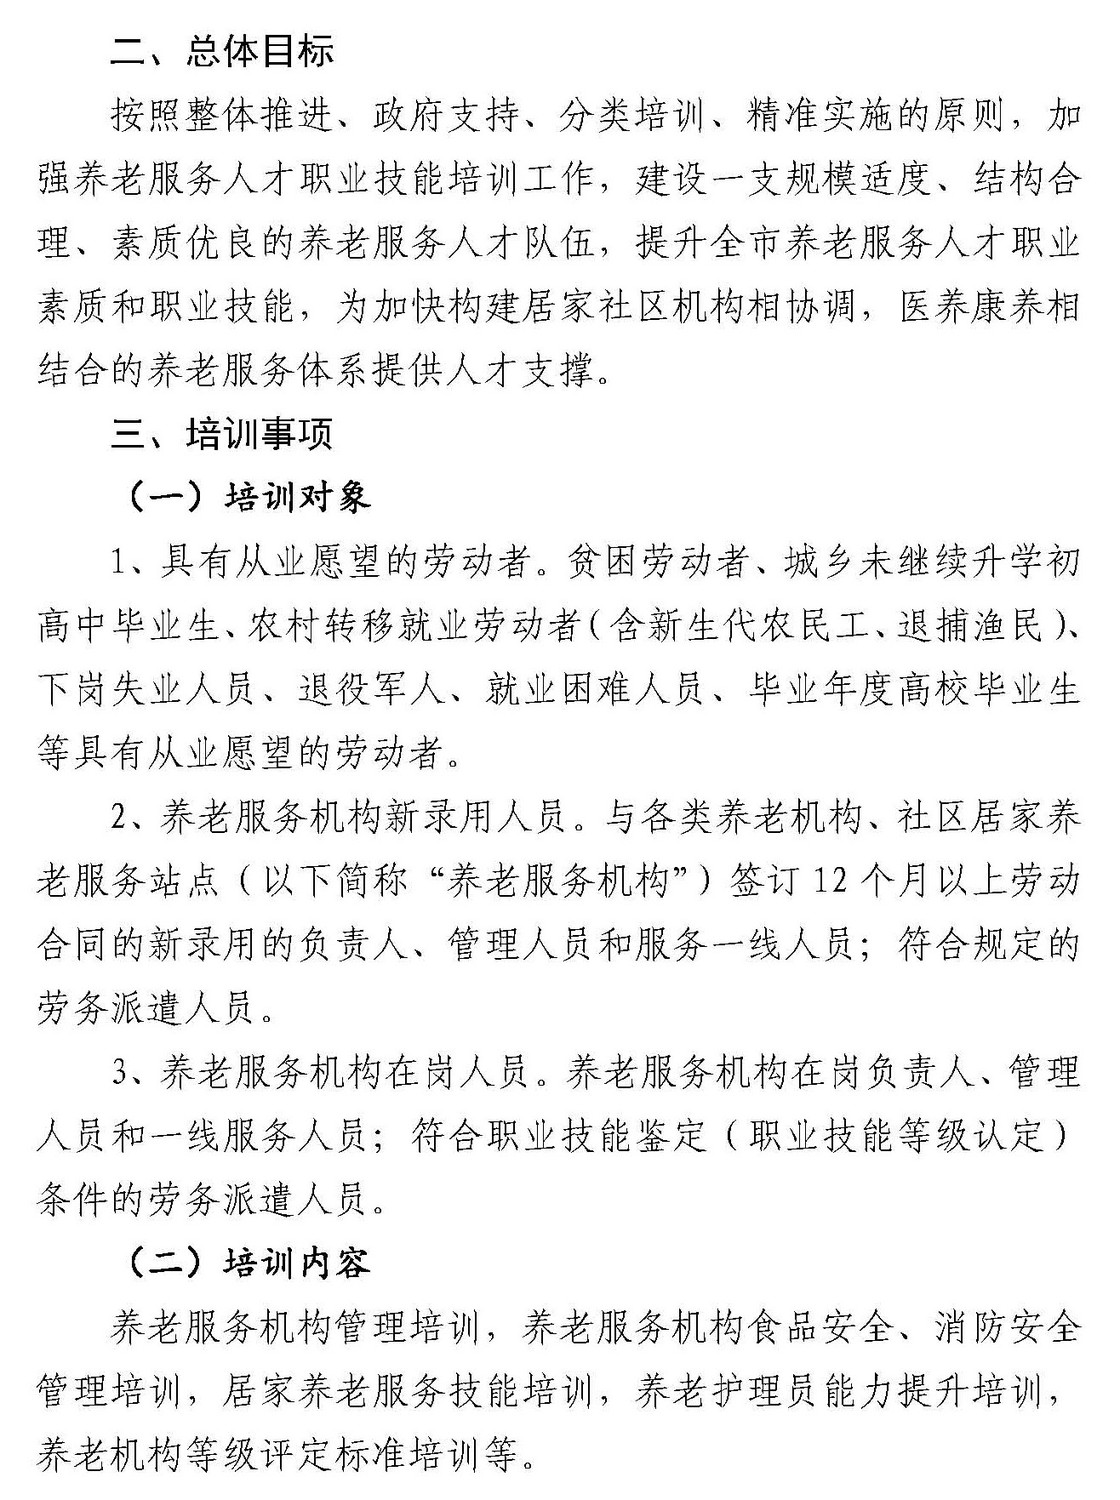 -10 关于开展2020年安庆市养老服务人才培训工作的通知-114_页面_2.jpg